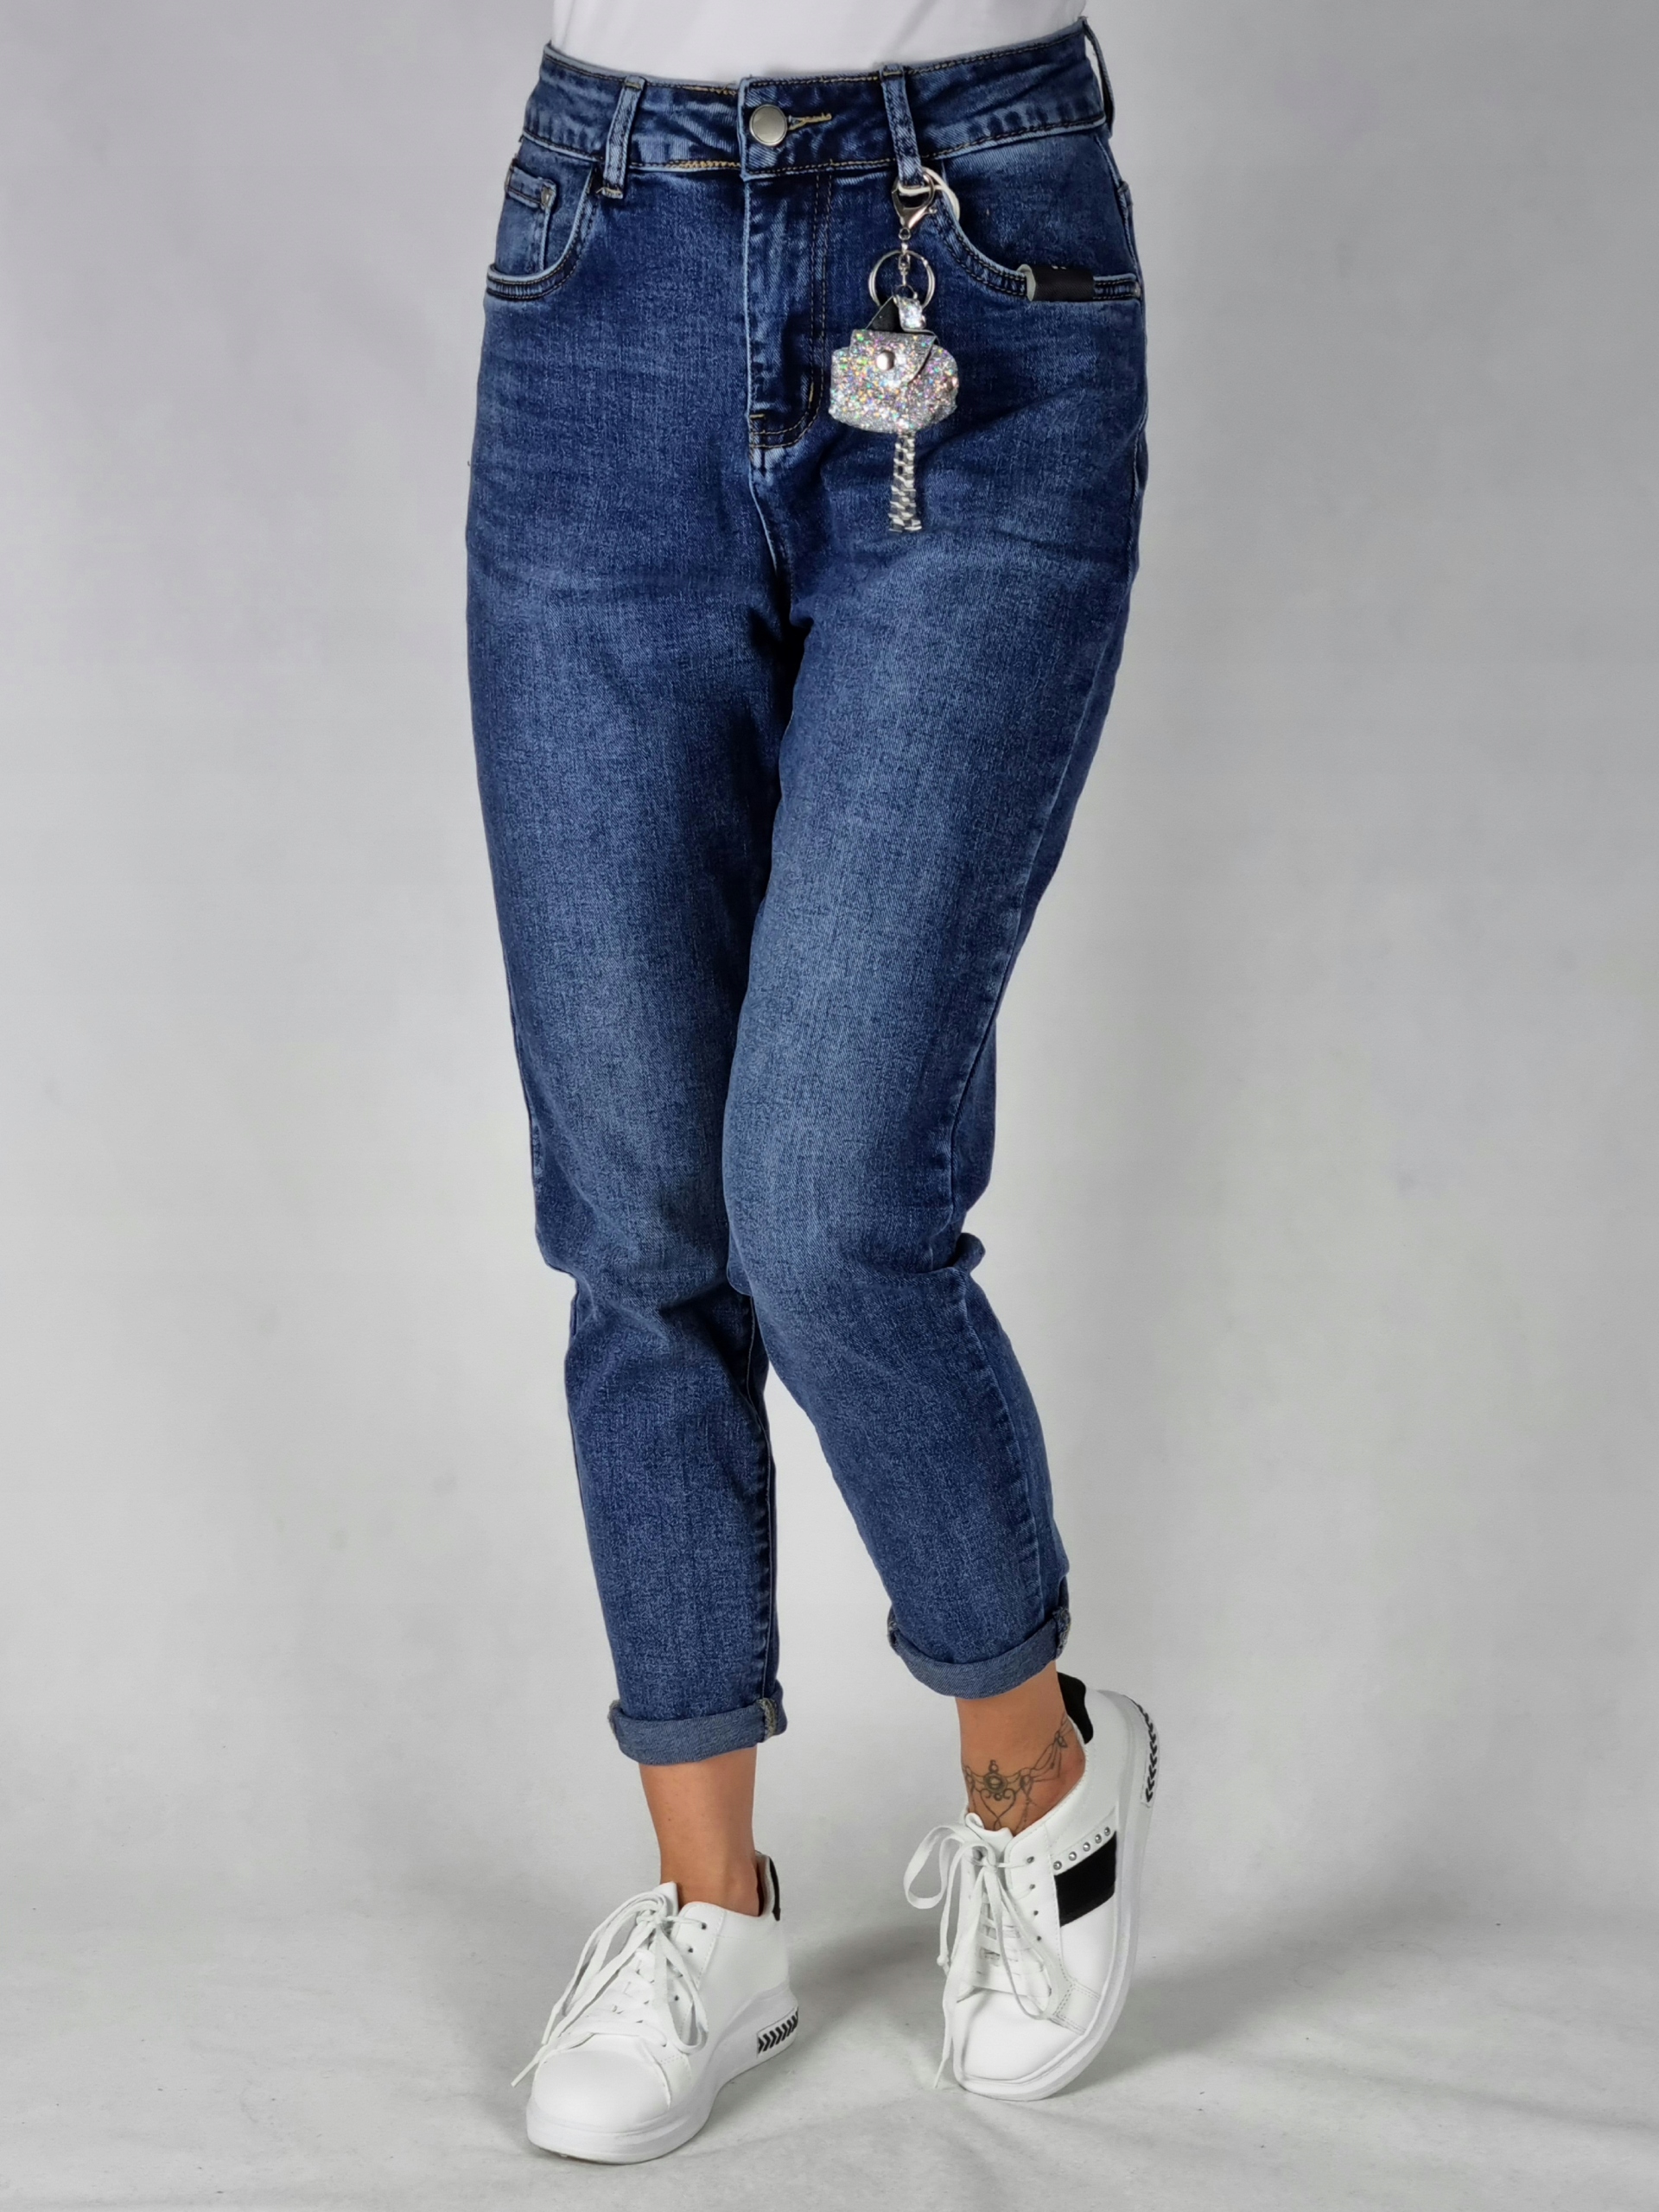 M. SARA BOYFRIEND джинсовые брюки размер M застежка-молния